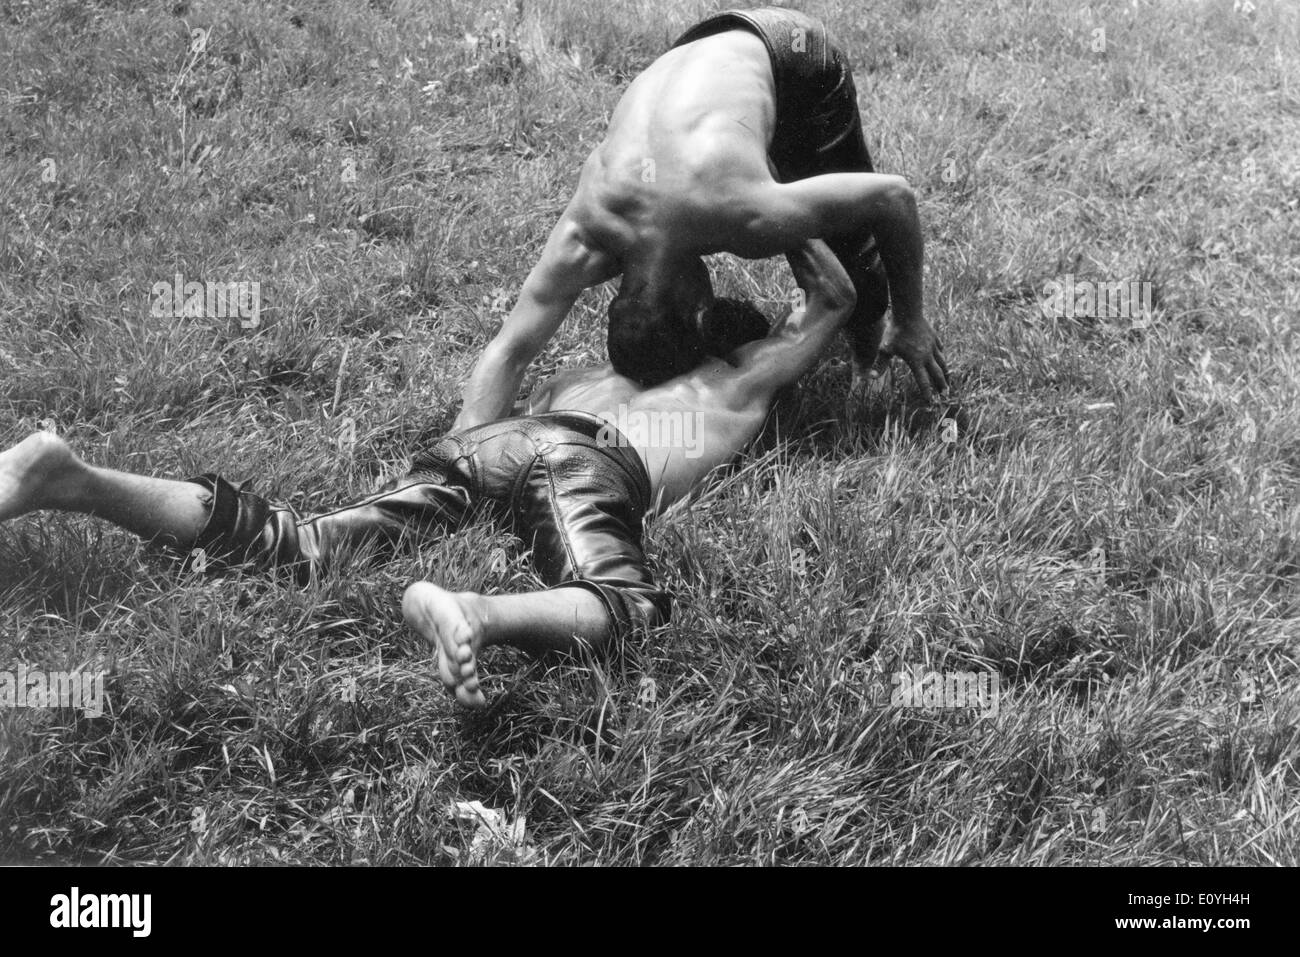 Maggio 12, 1970; Zurigo, Svizzera; uomini wrestling in Svizzera. Foto Stock